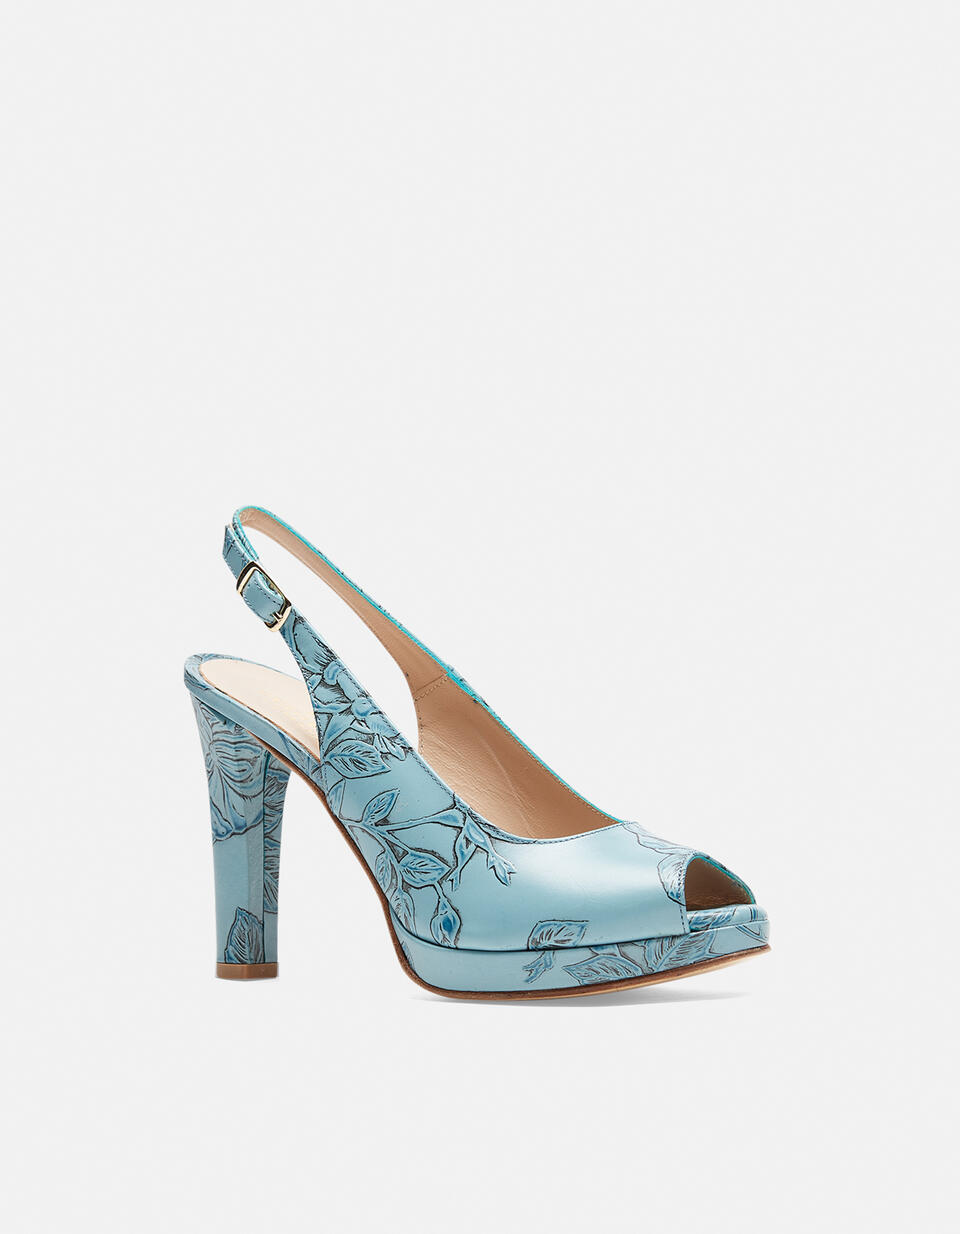 MONROE SANDAL Light blue  - Woman Shoes - Shoes - Cuoieria Fiorentina